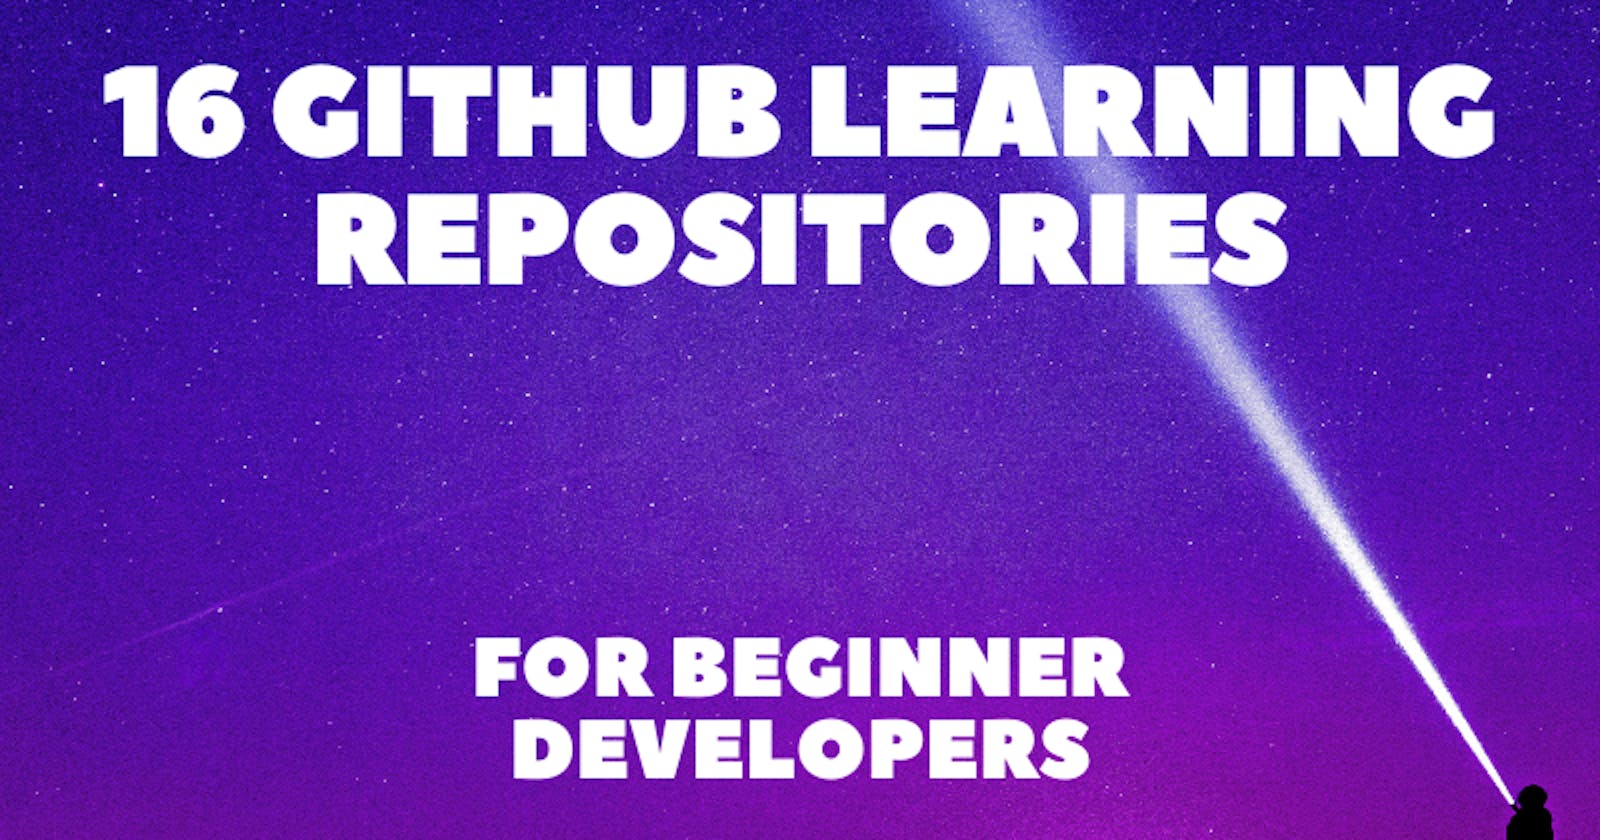 16 GitHub Learning Repositories for Beginner Developers 💖👍